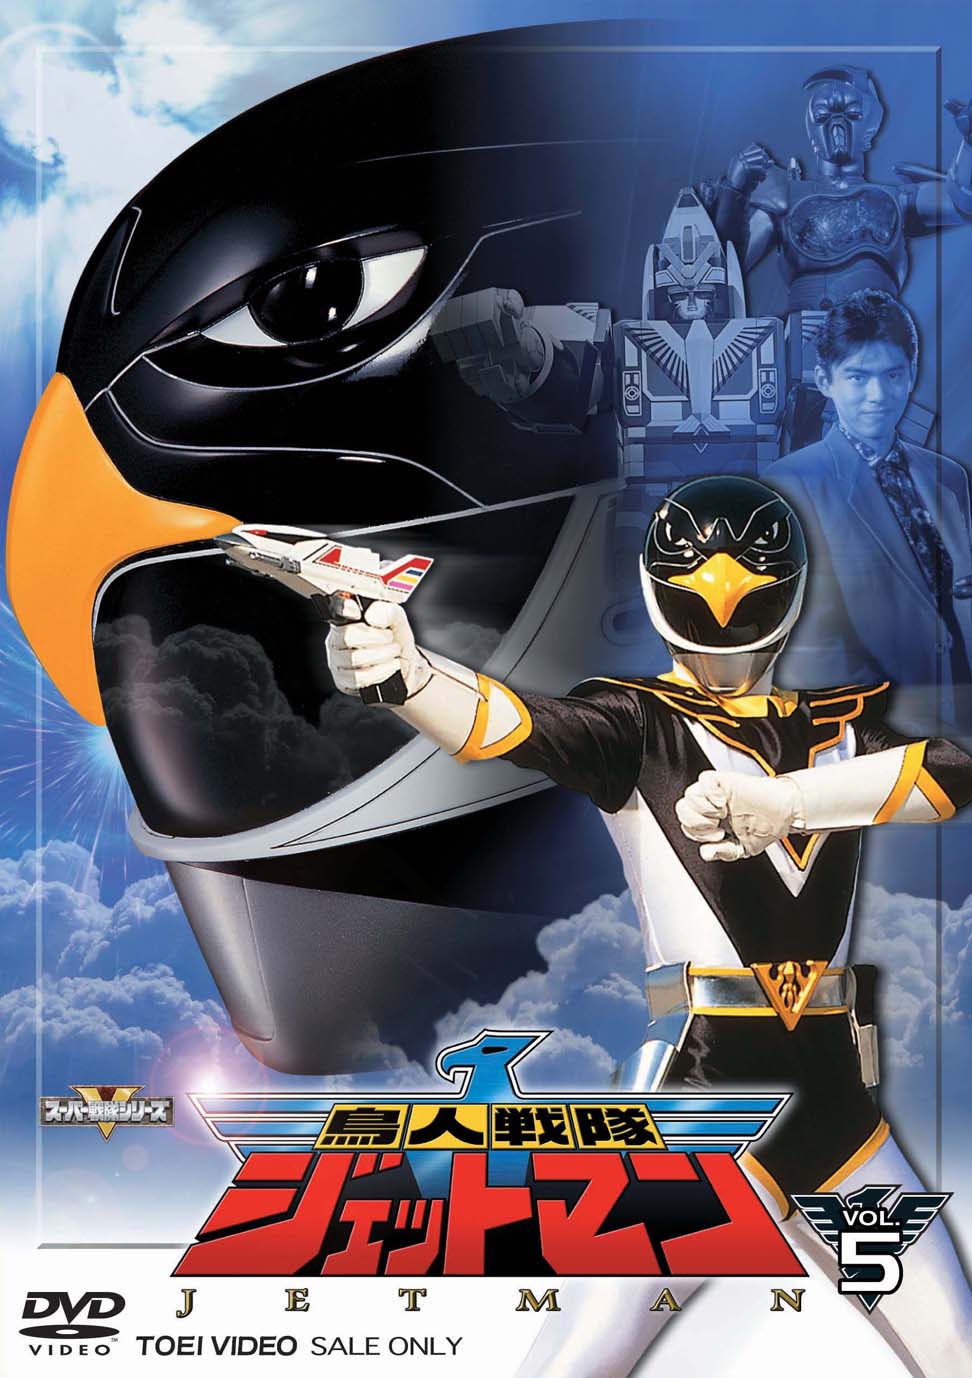 東映DVD5枚組×2(10枚) 鳥人戦隊ジェットマン DVD-COLLECTION VOL.1・2 